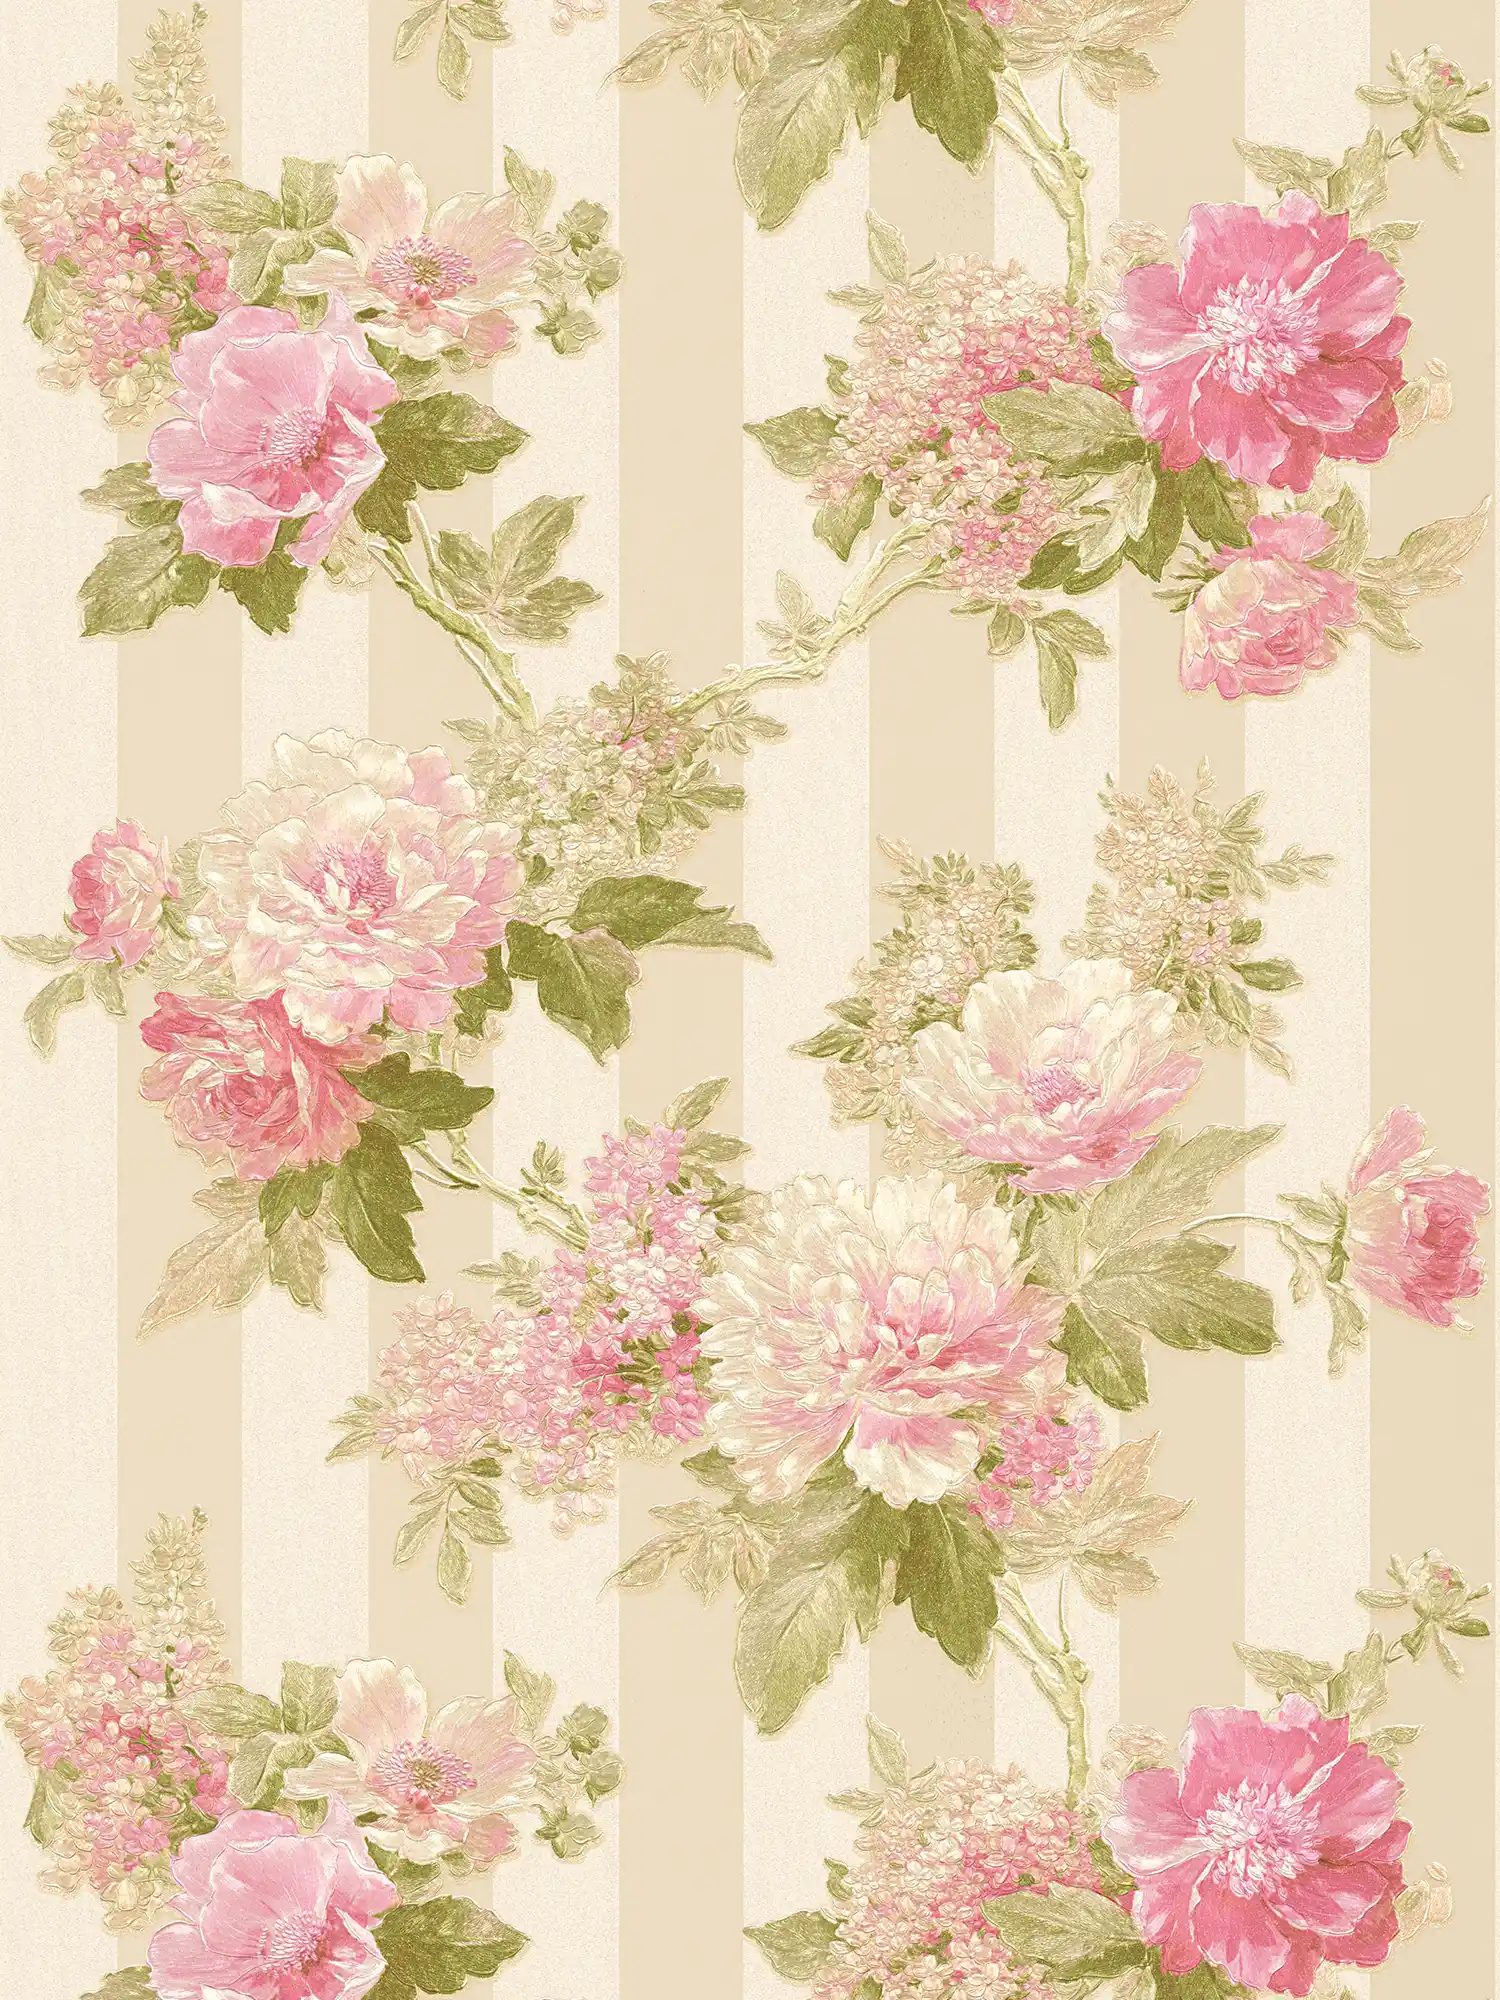         Tapete Blütenmotiv und Streifendesign – Rosa, Grün, Creme
    